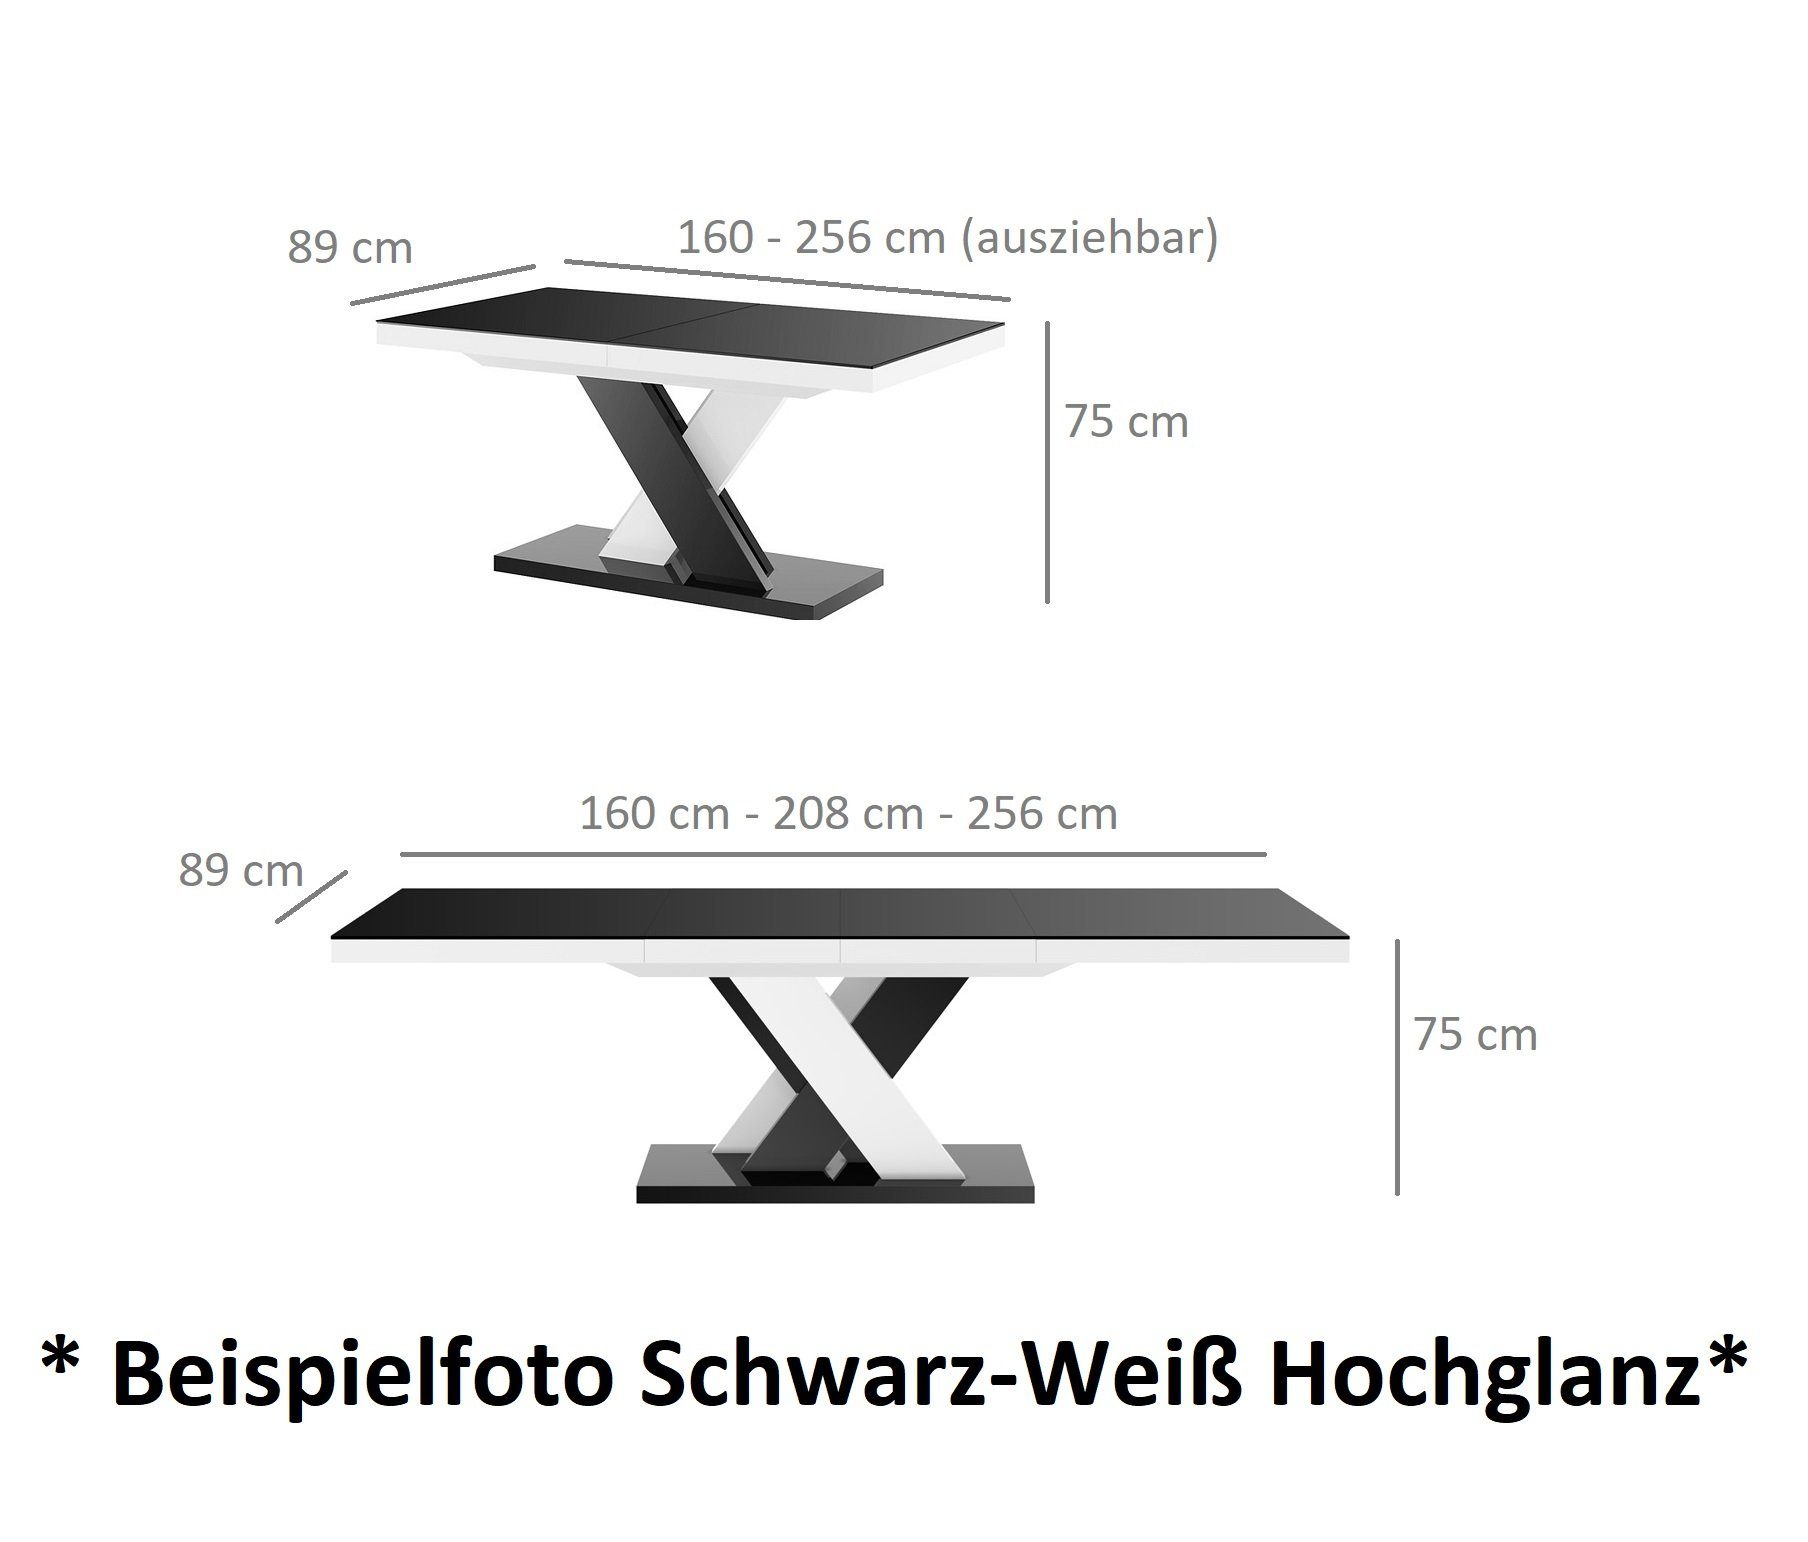 designimpex Esstisch Design Tisch 160 256 Weiß Hochglanz cm Grau / Hochglanz Grau ausziehbar HEN-111 Hochglanz / bis Weiß